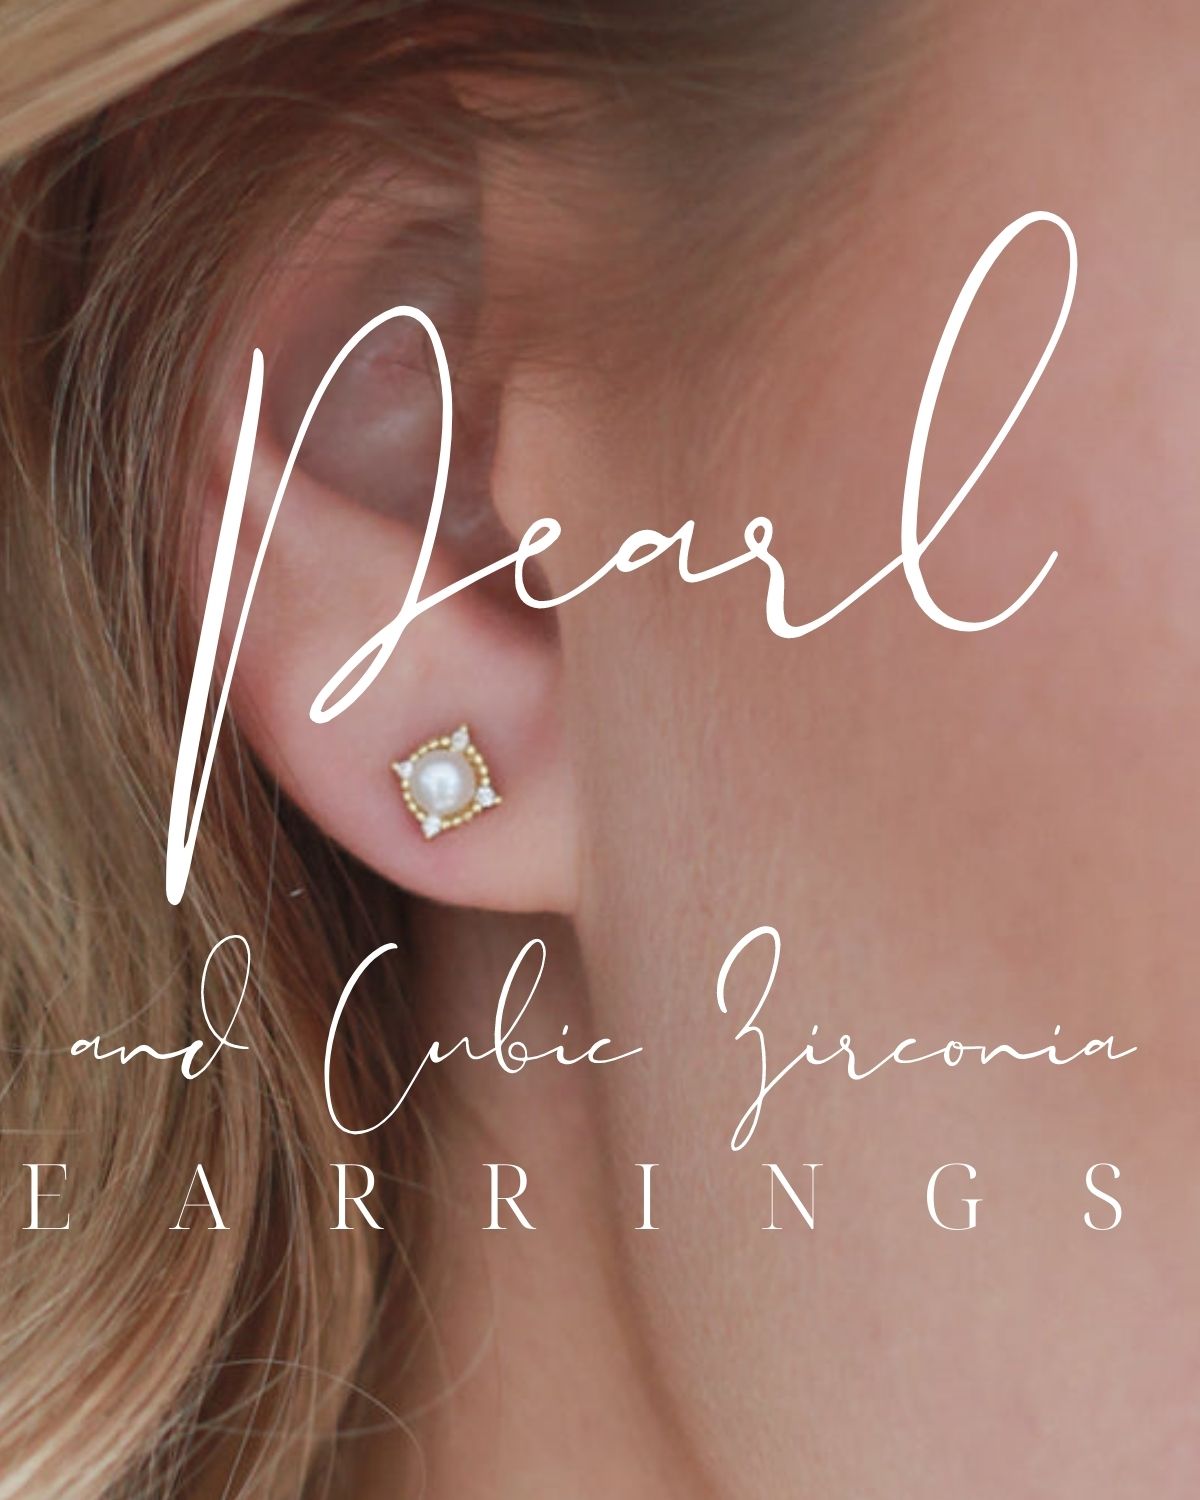 A pearl earrings